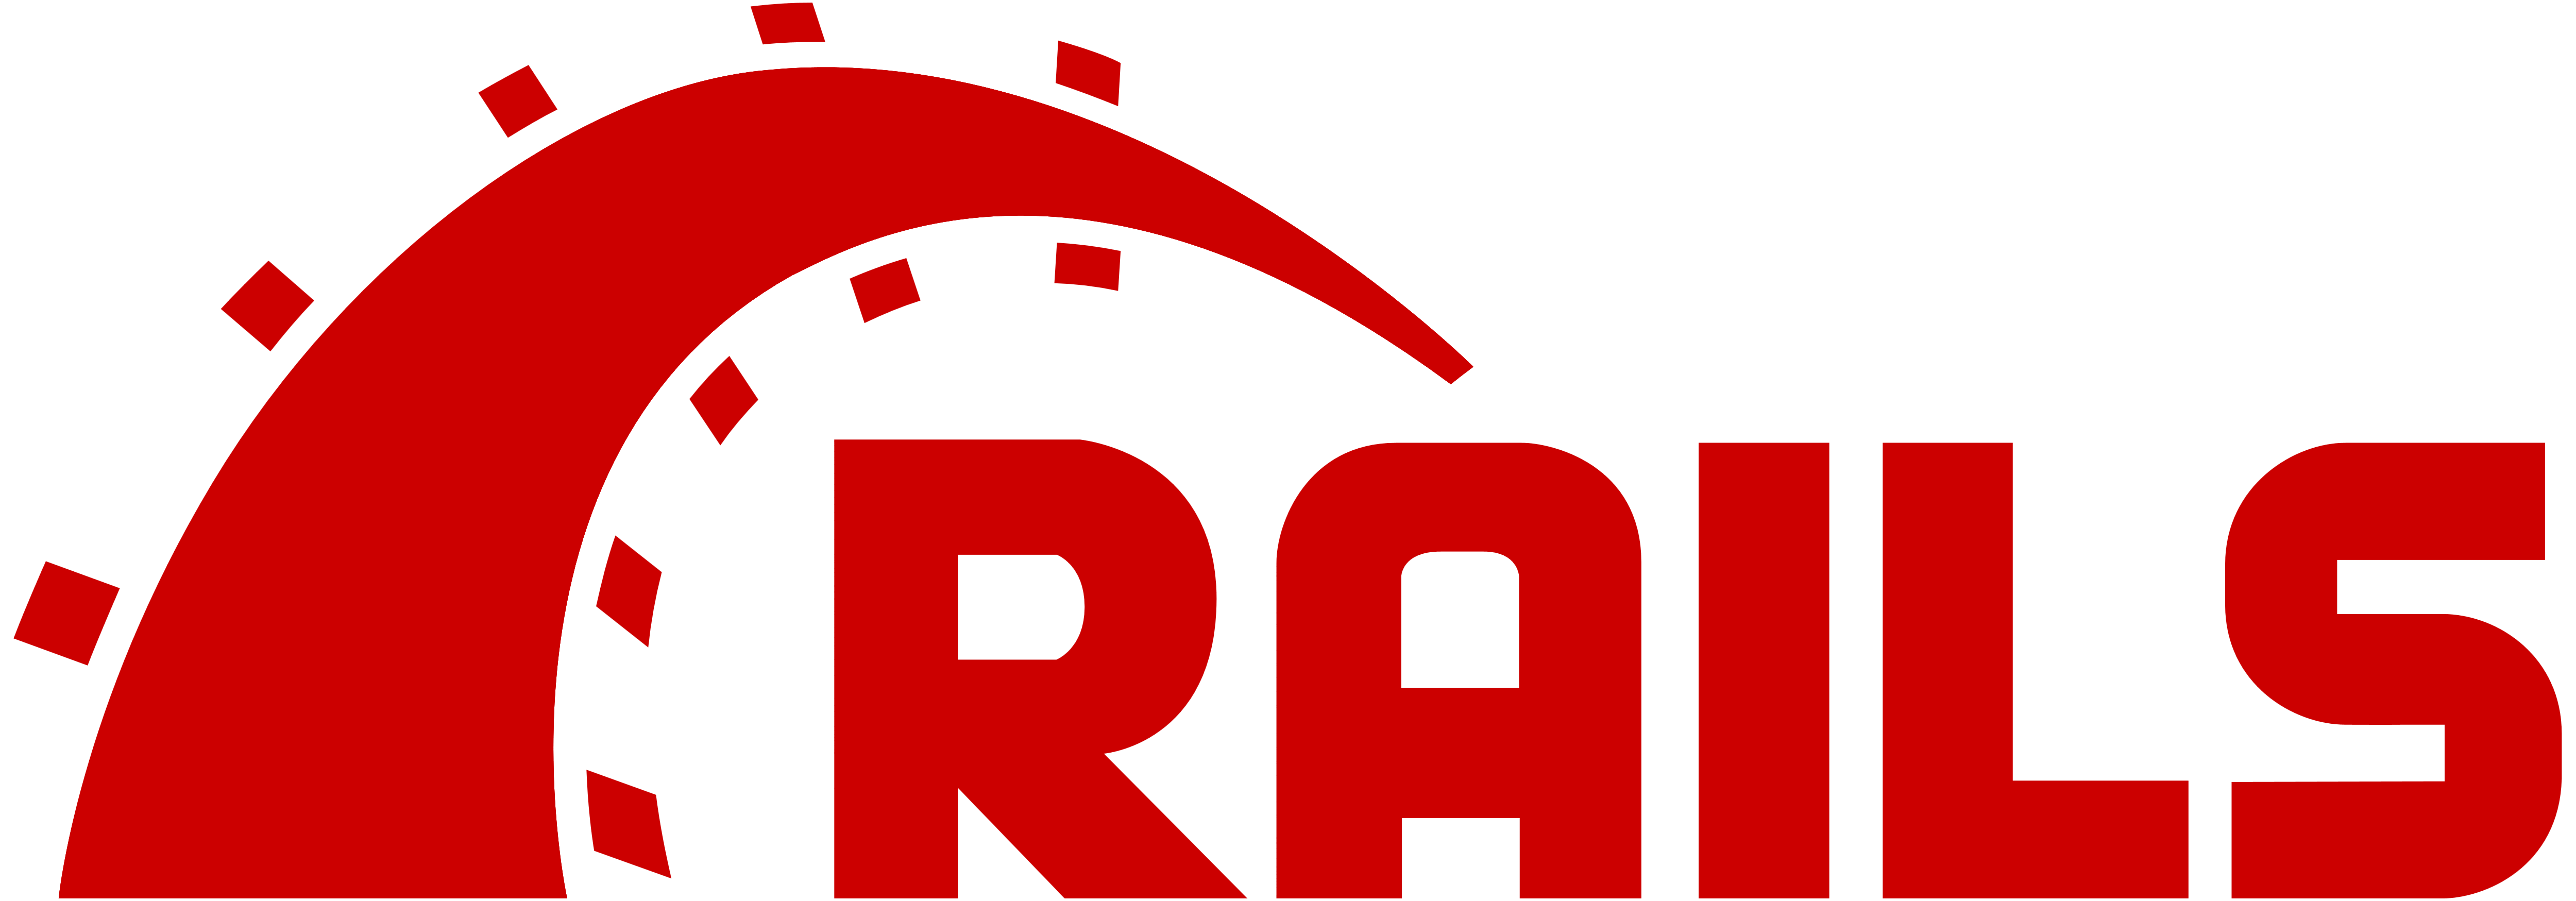 Embaucher un développeur Ruby on Rails